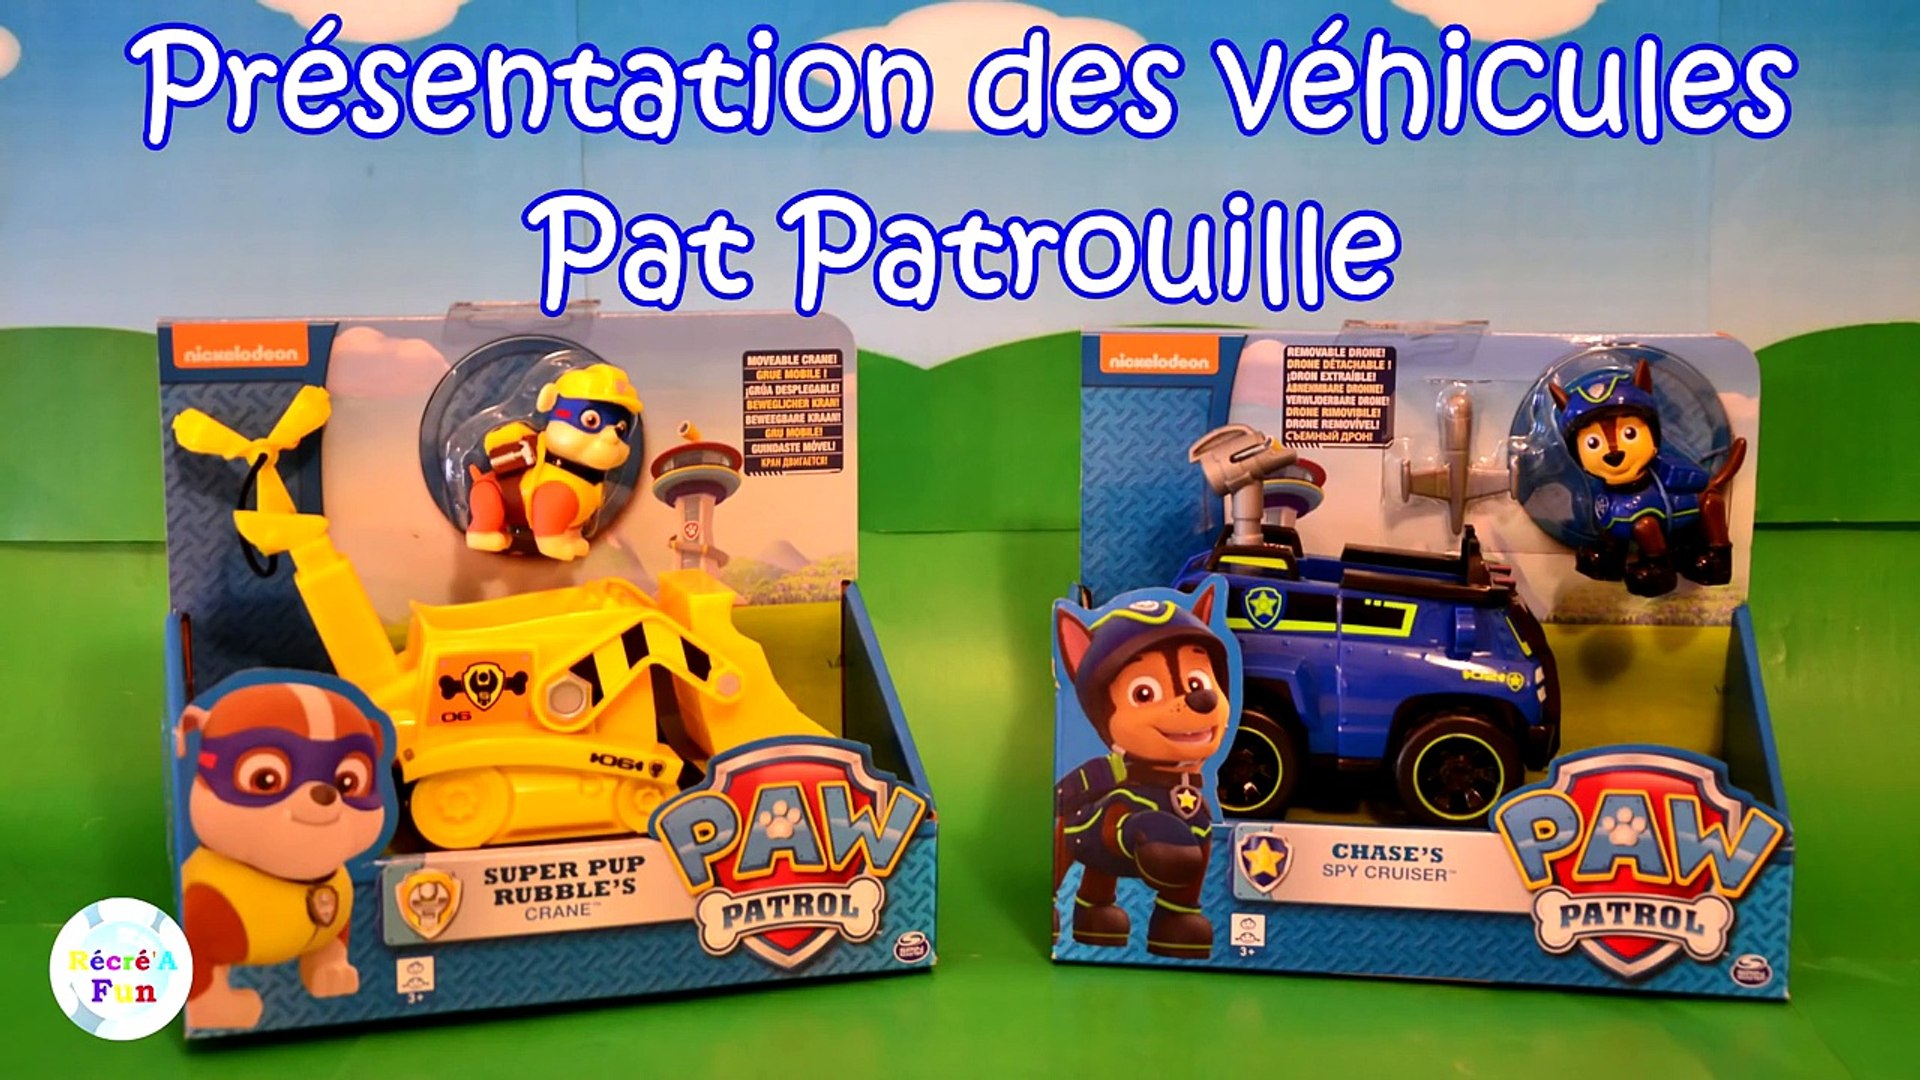 La Pat' Patrouille La Super Patrouille Film – Des super véhicules - Vidéo  Dailymotion